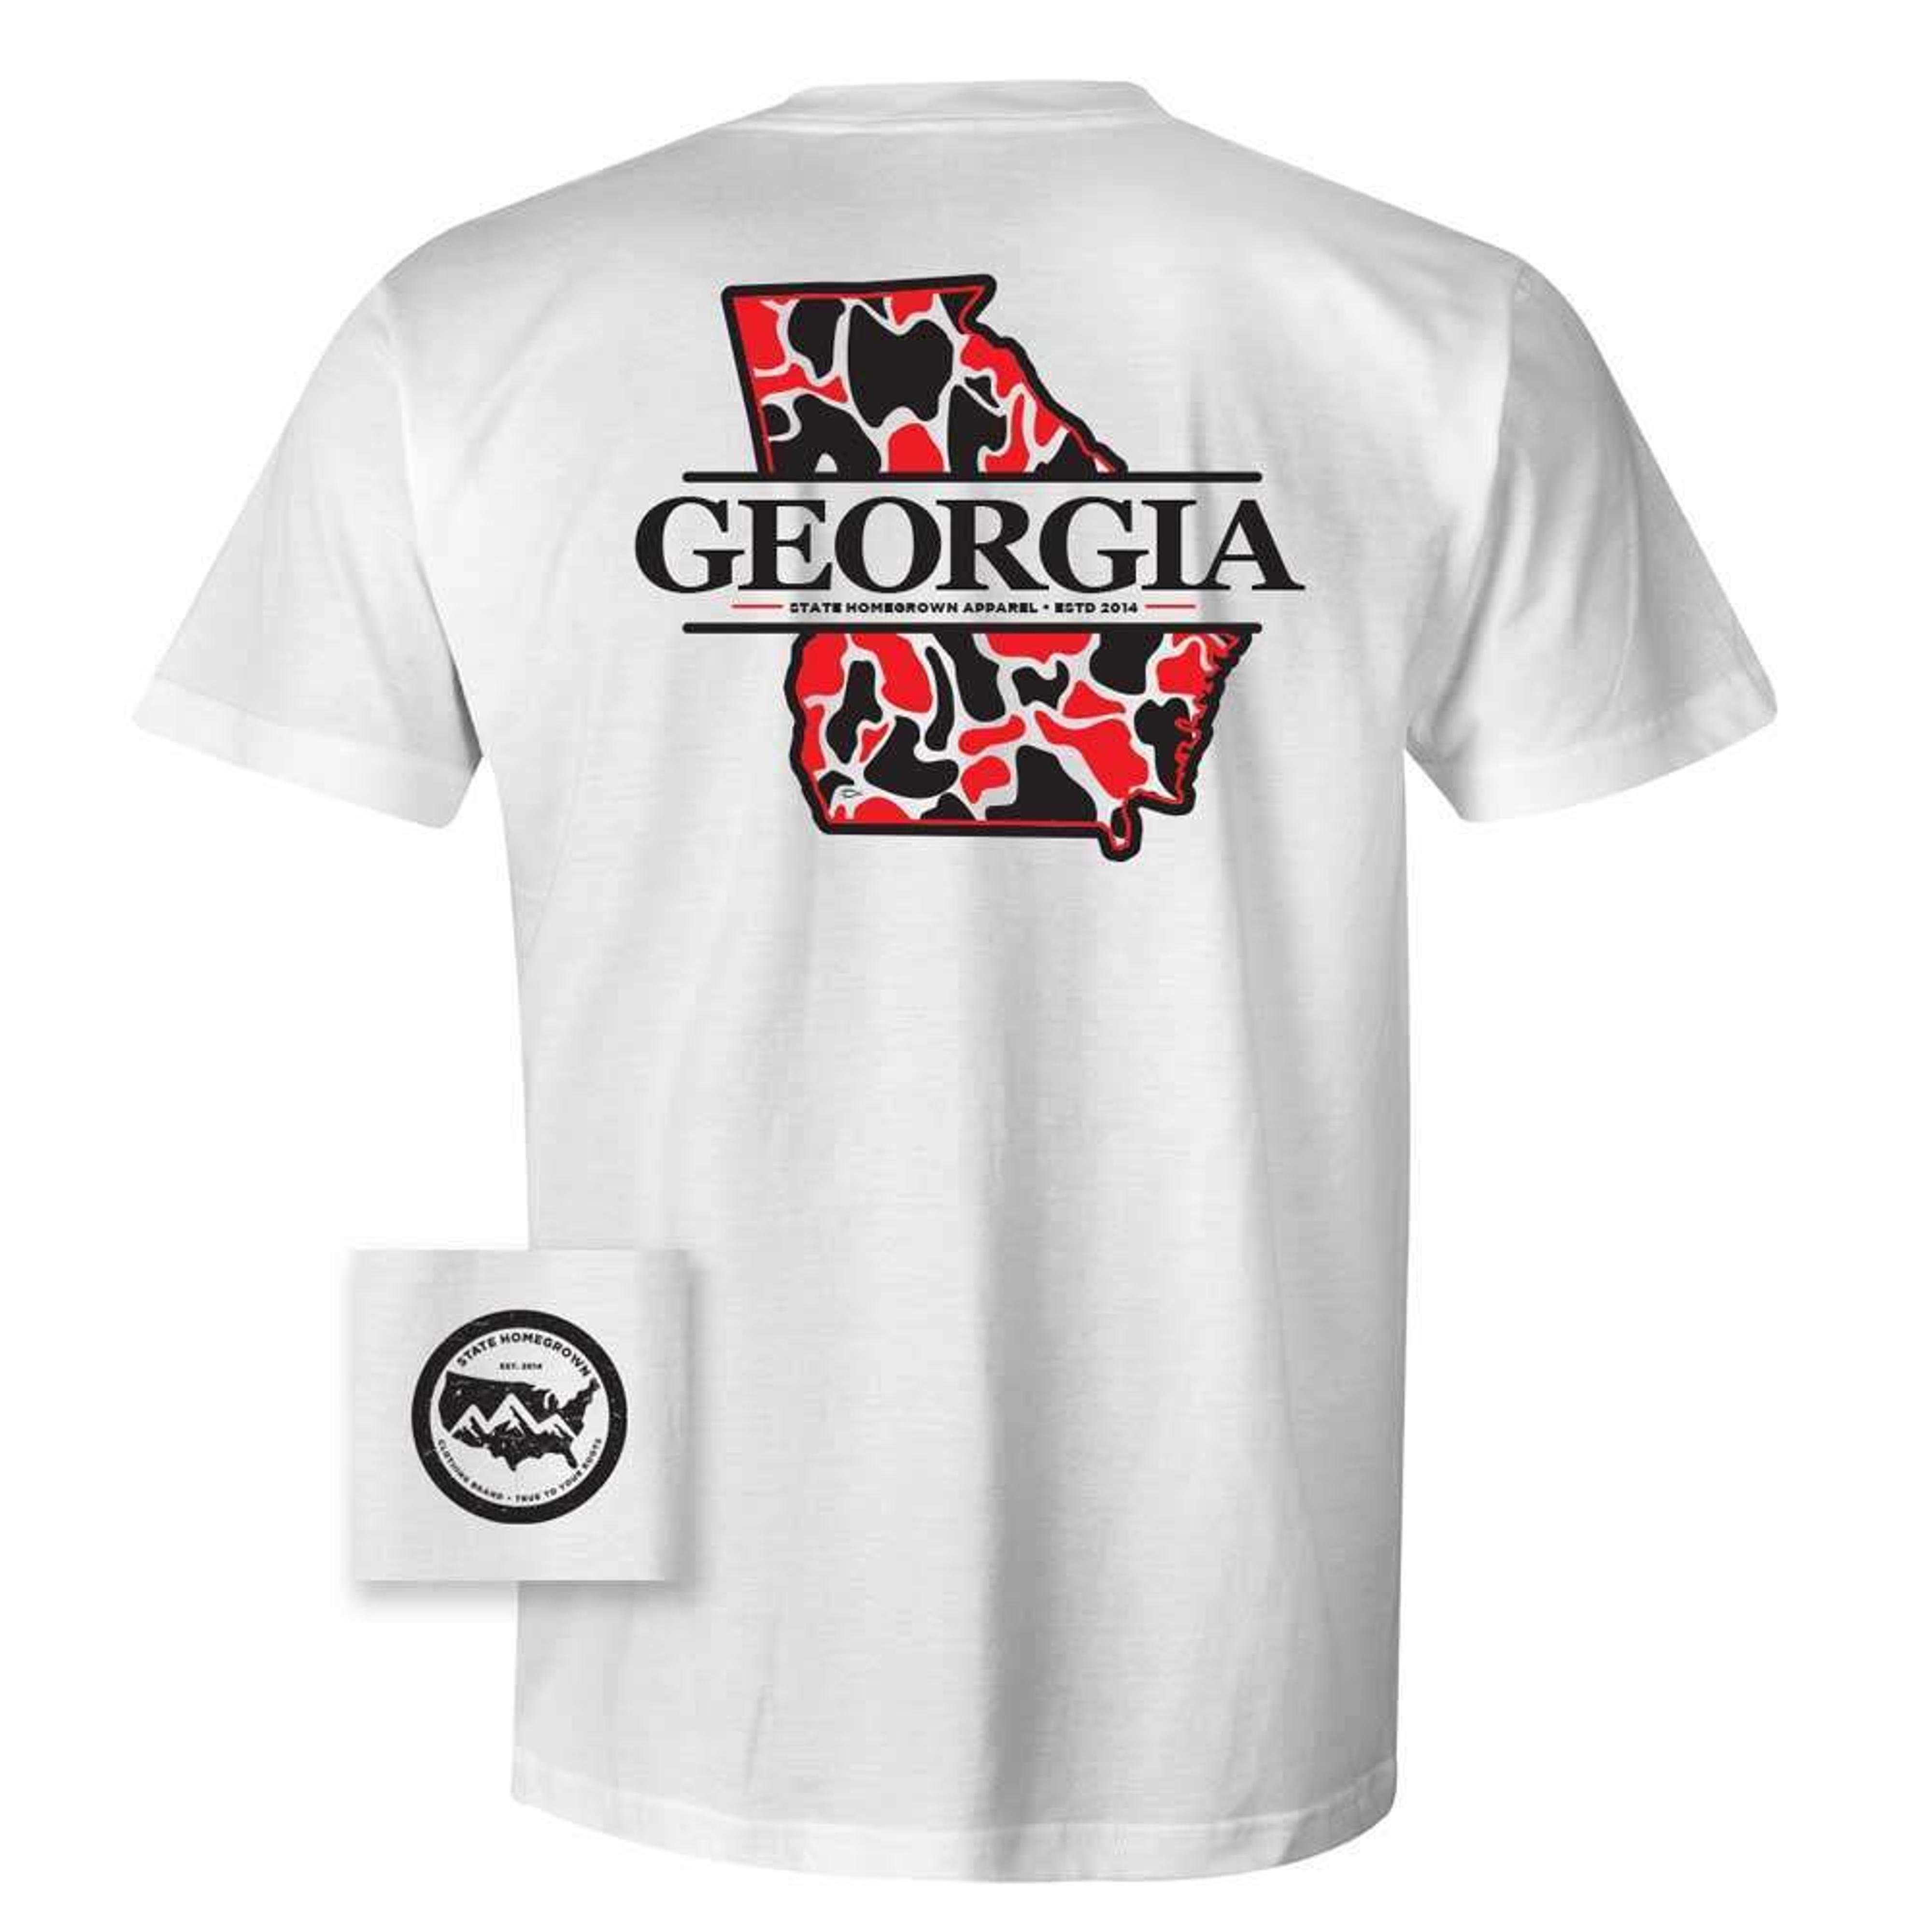  Georgia Red Camo Ss T- Shirt